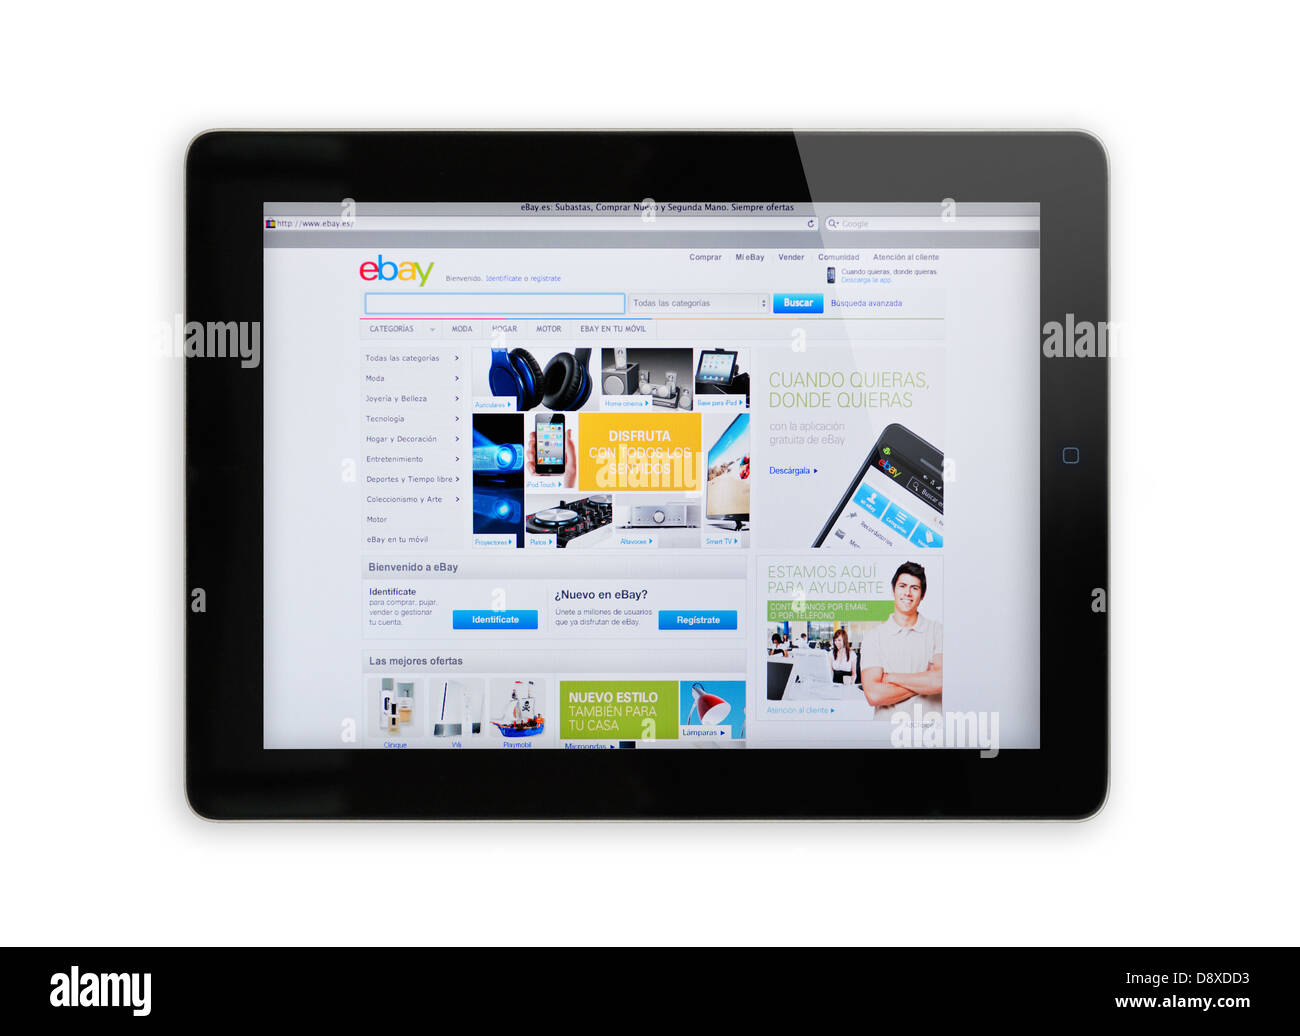 Spanien eBay online-shopping-Website auf dem iPad-Bildschirm Stockfoto